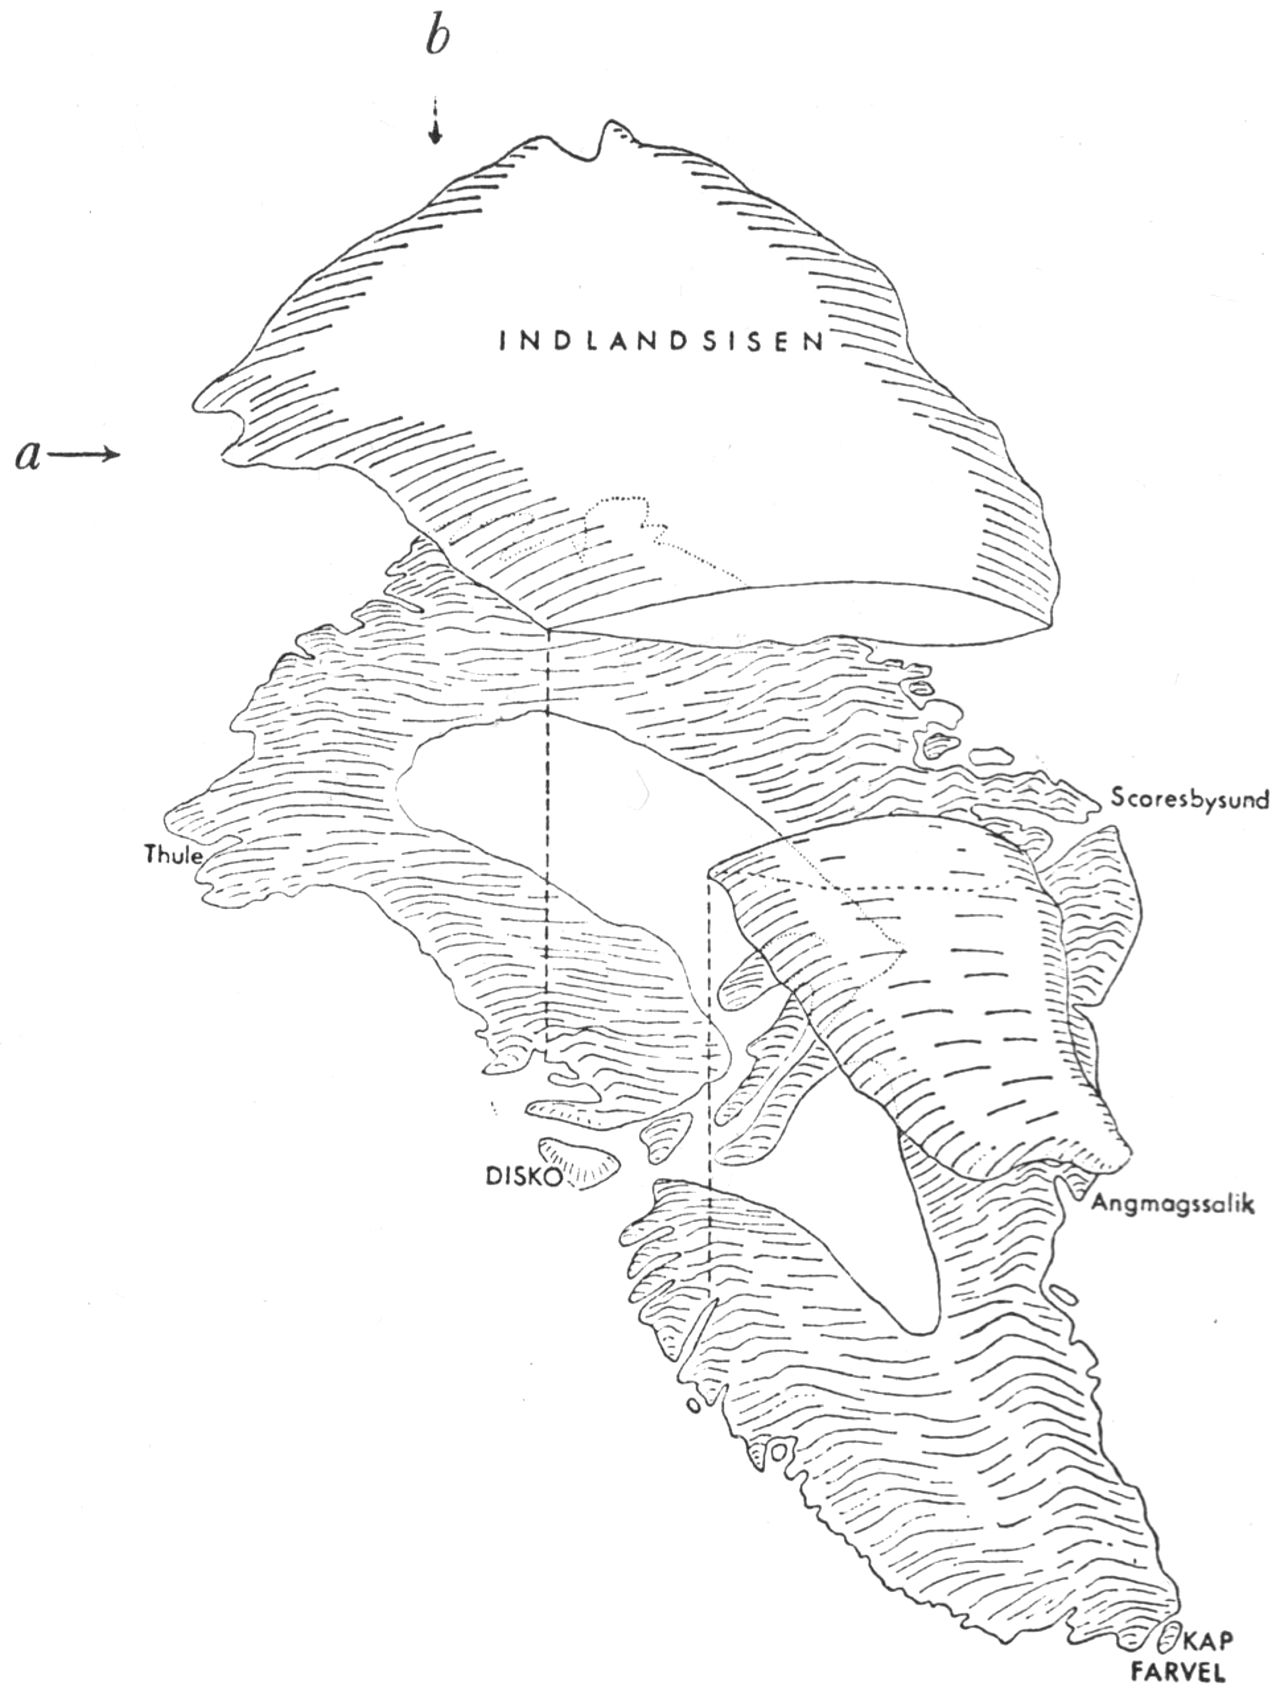 (Kort). Skitse af Grønland med Indlandsisen hævet op fra det underliggende landskab. Skæring af a og b angiver Camp Century’s omtrentlige position på Indlandsisen (Tegn. efter »Varv«, 1964).